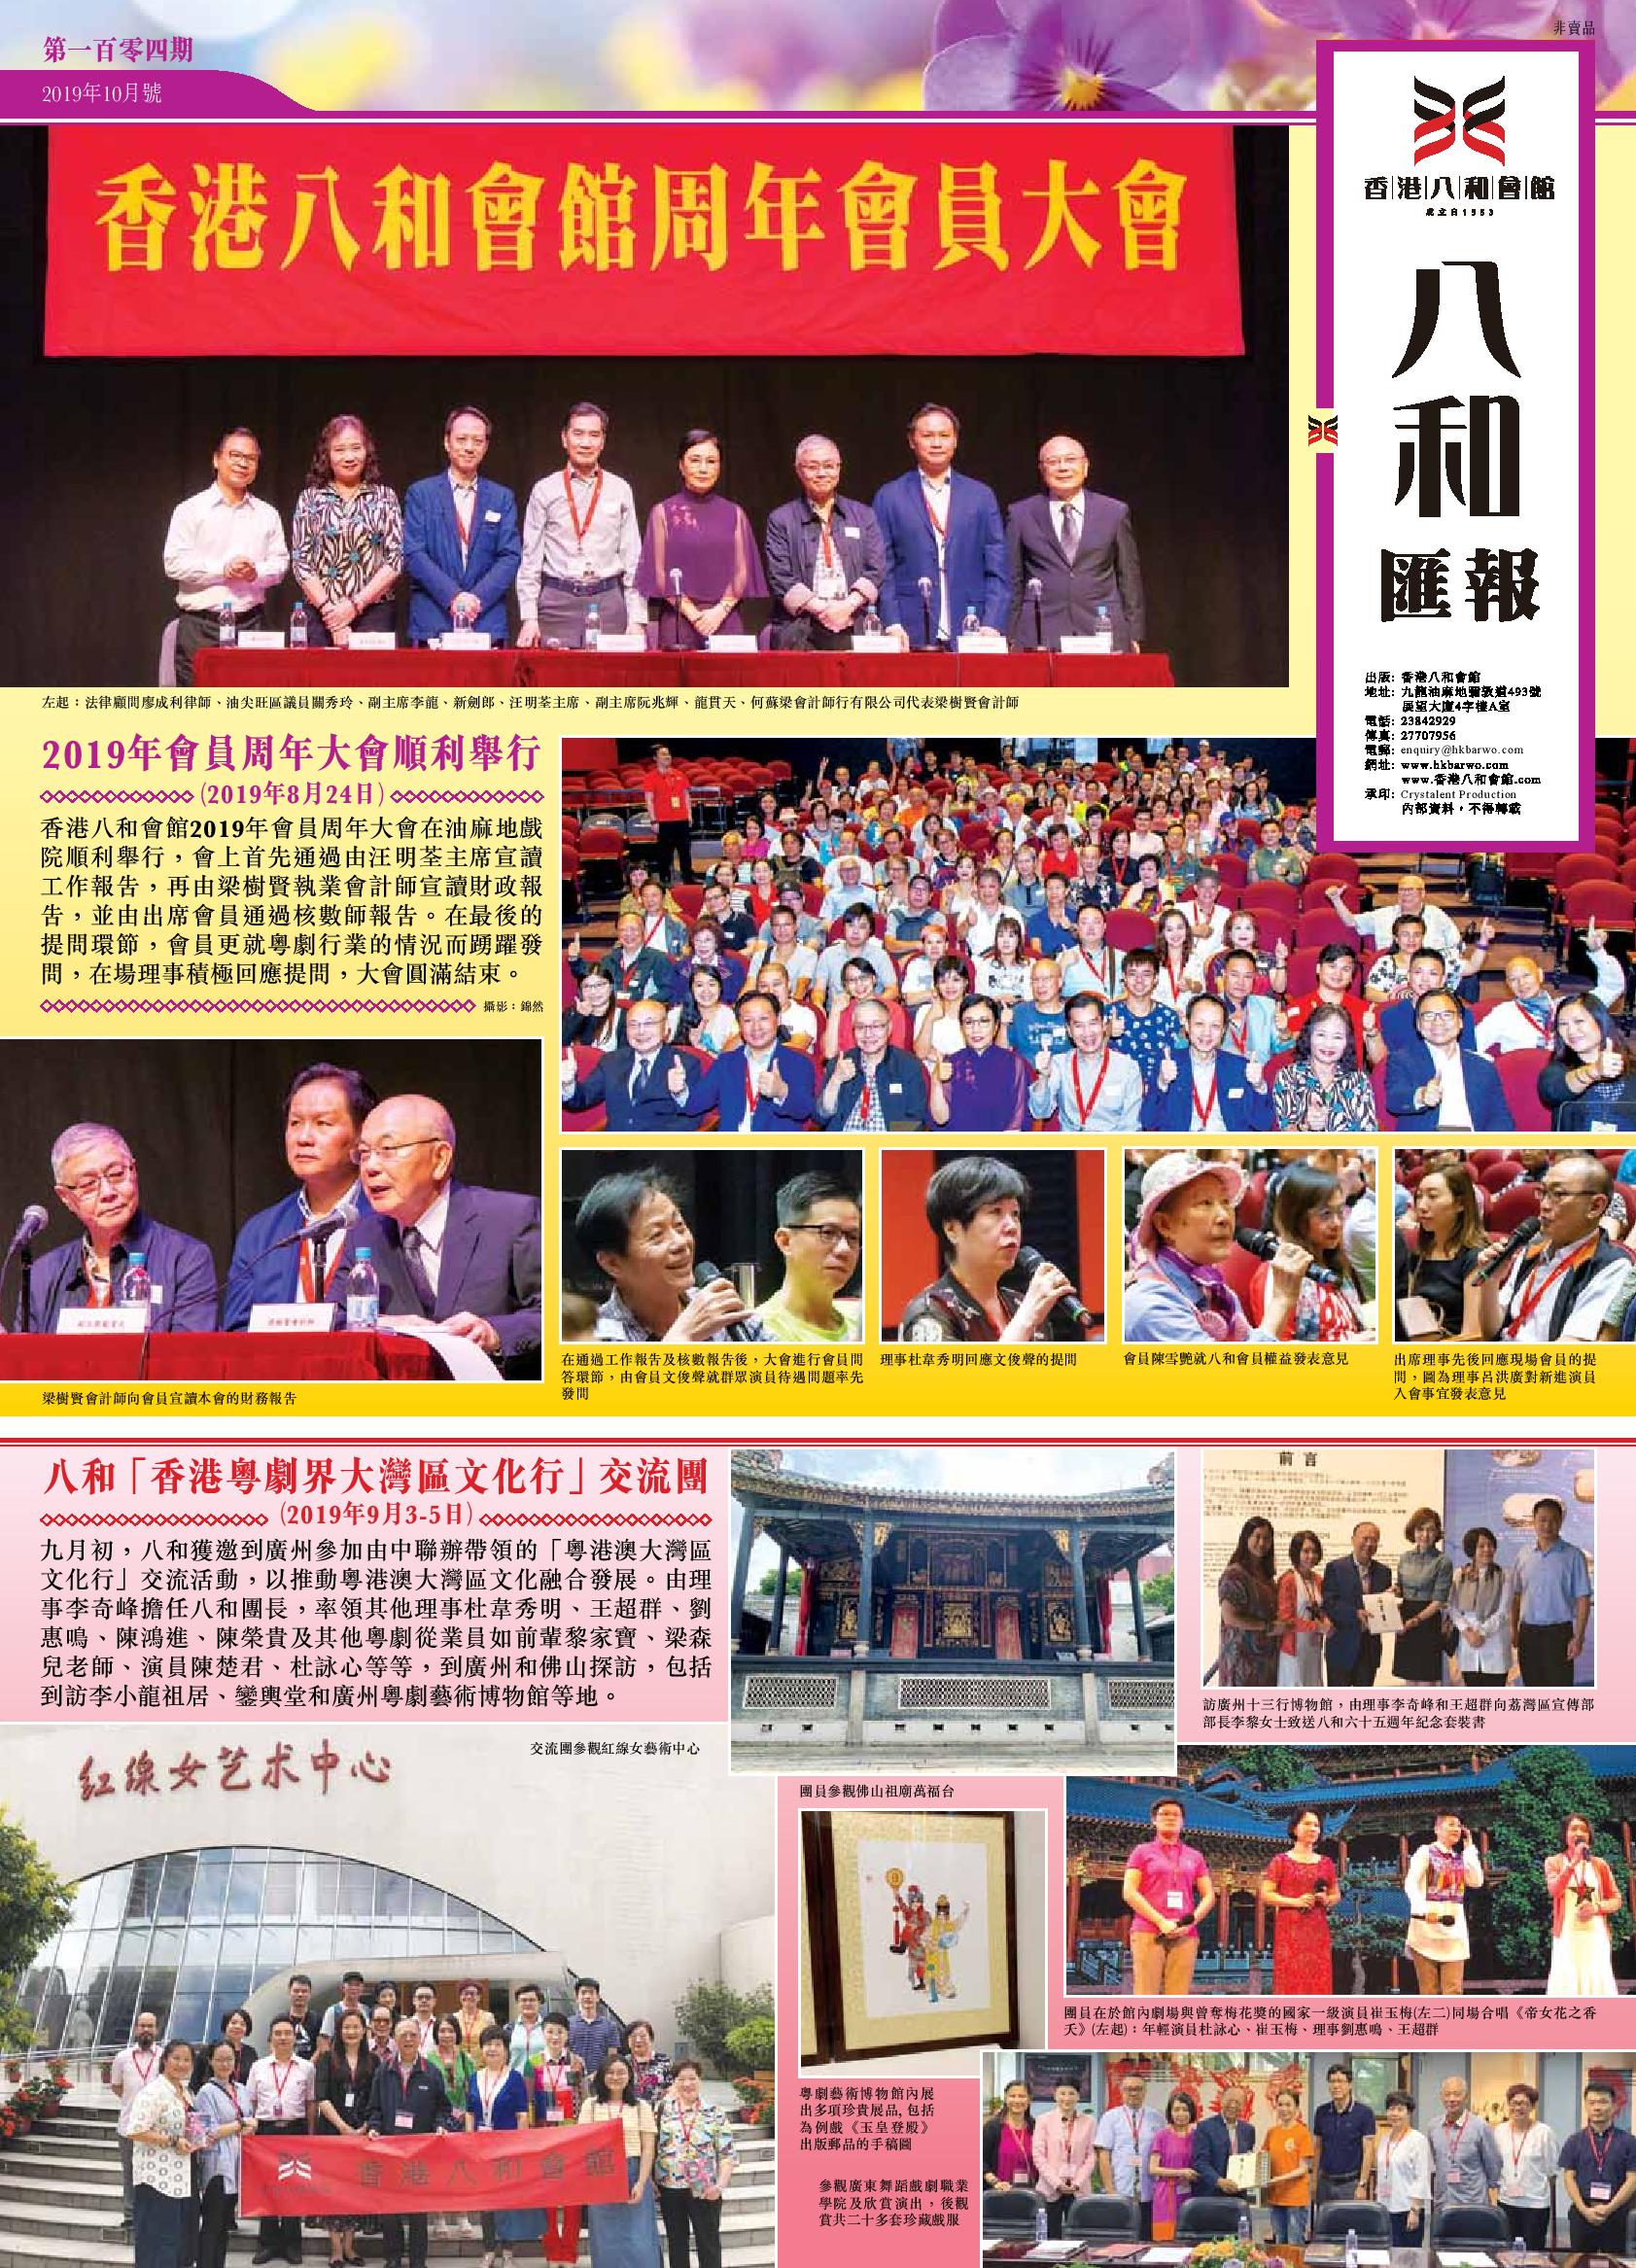 2019年會員周年大會順利舉行 | 八和「香港粵劇界大灣區文化行」交流團